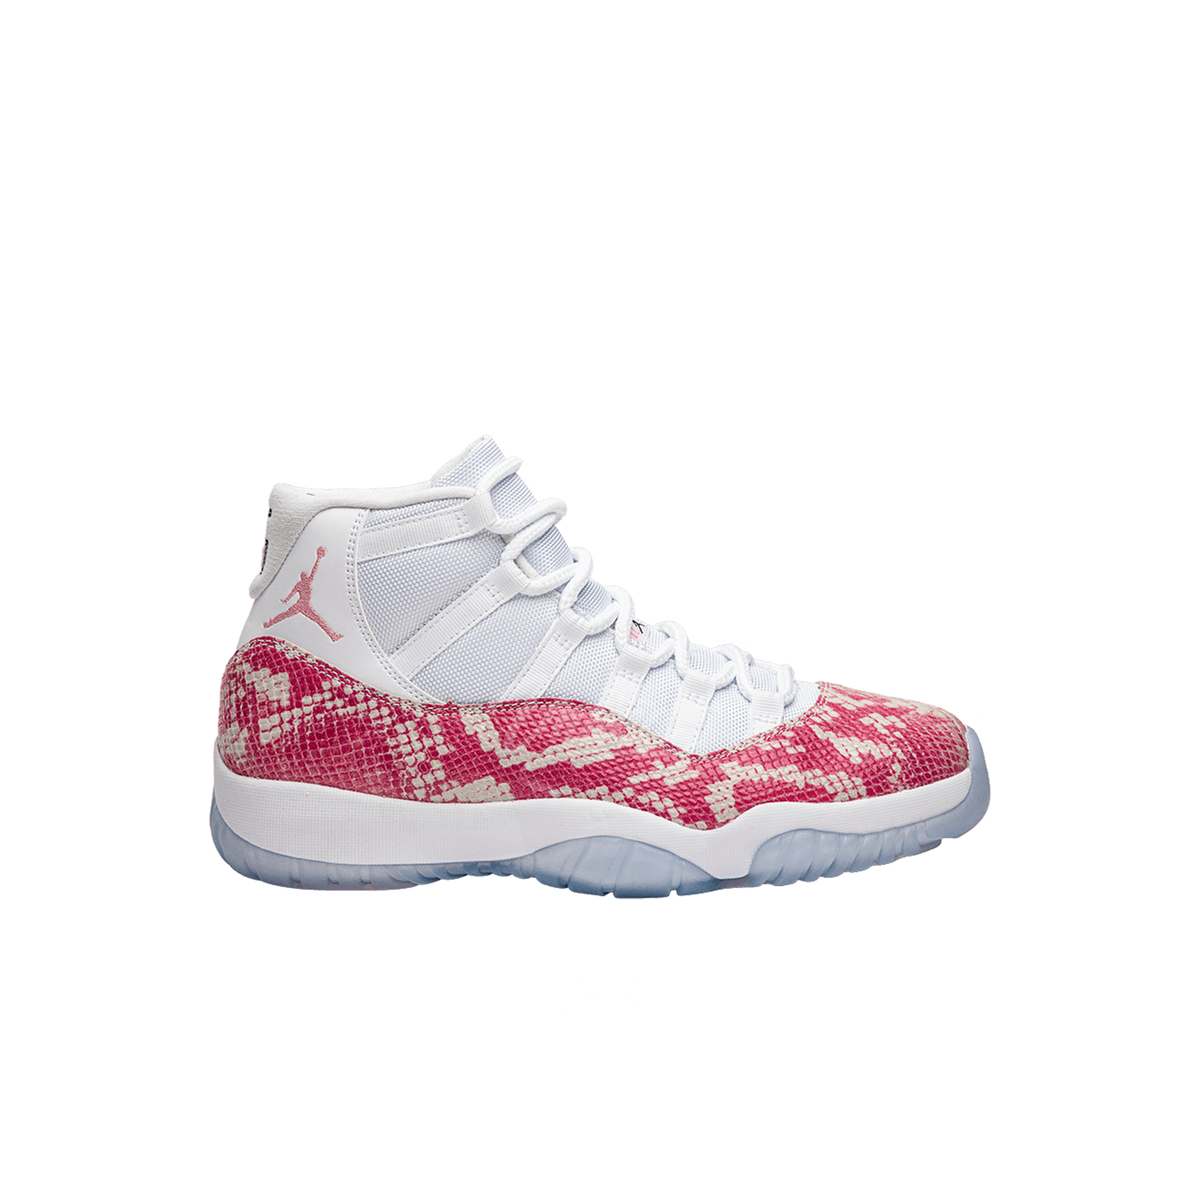 Air Jordan 11 OVO Pink Snakeskin PE "White/White Pink Ice"